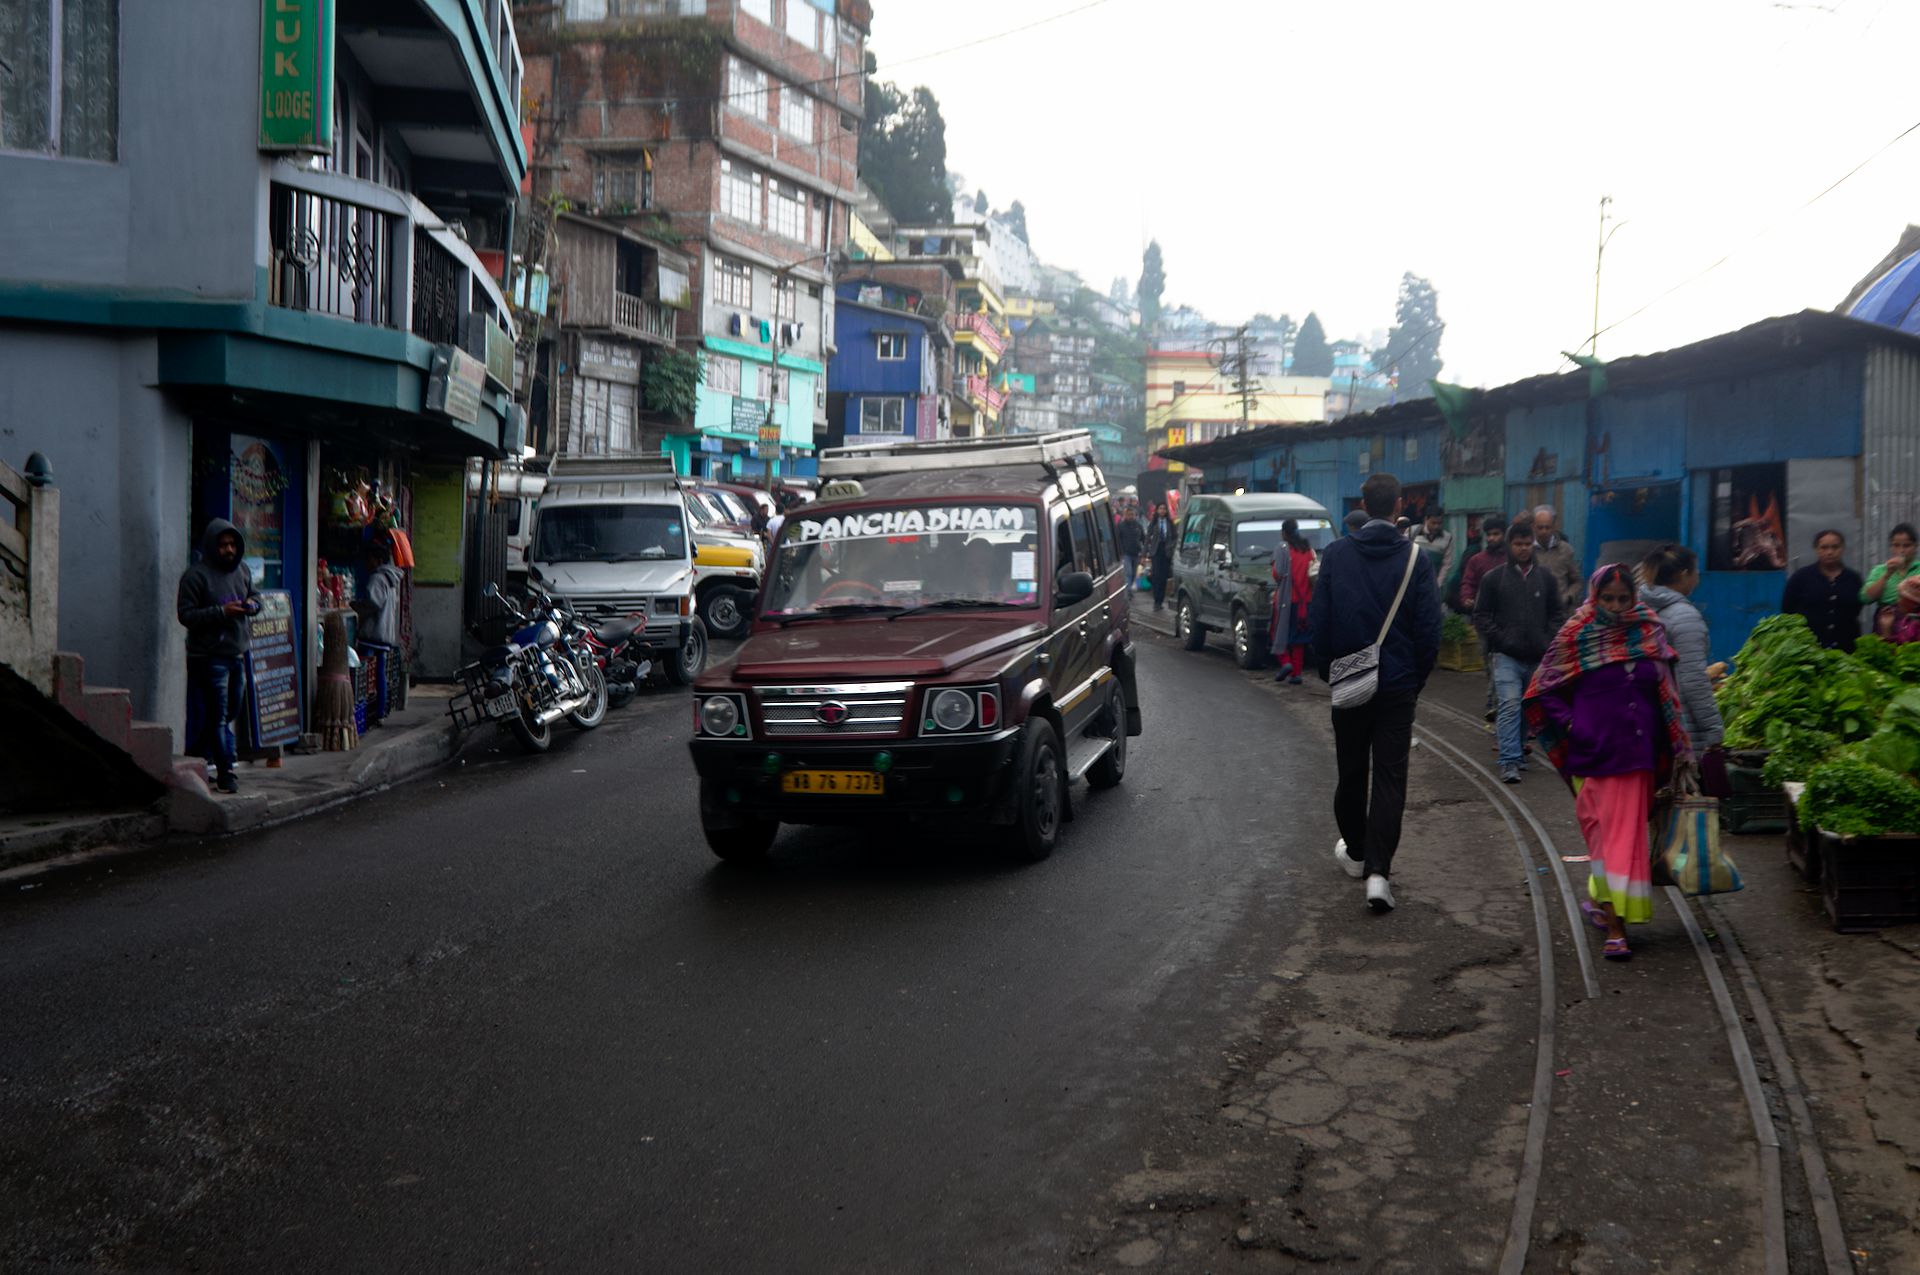 Darjeeling: von Tee und Bergen